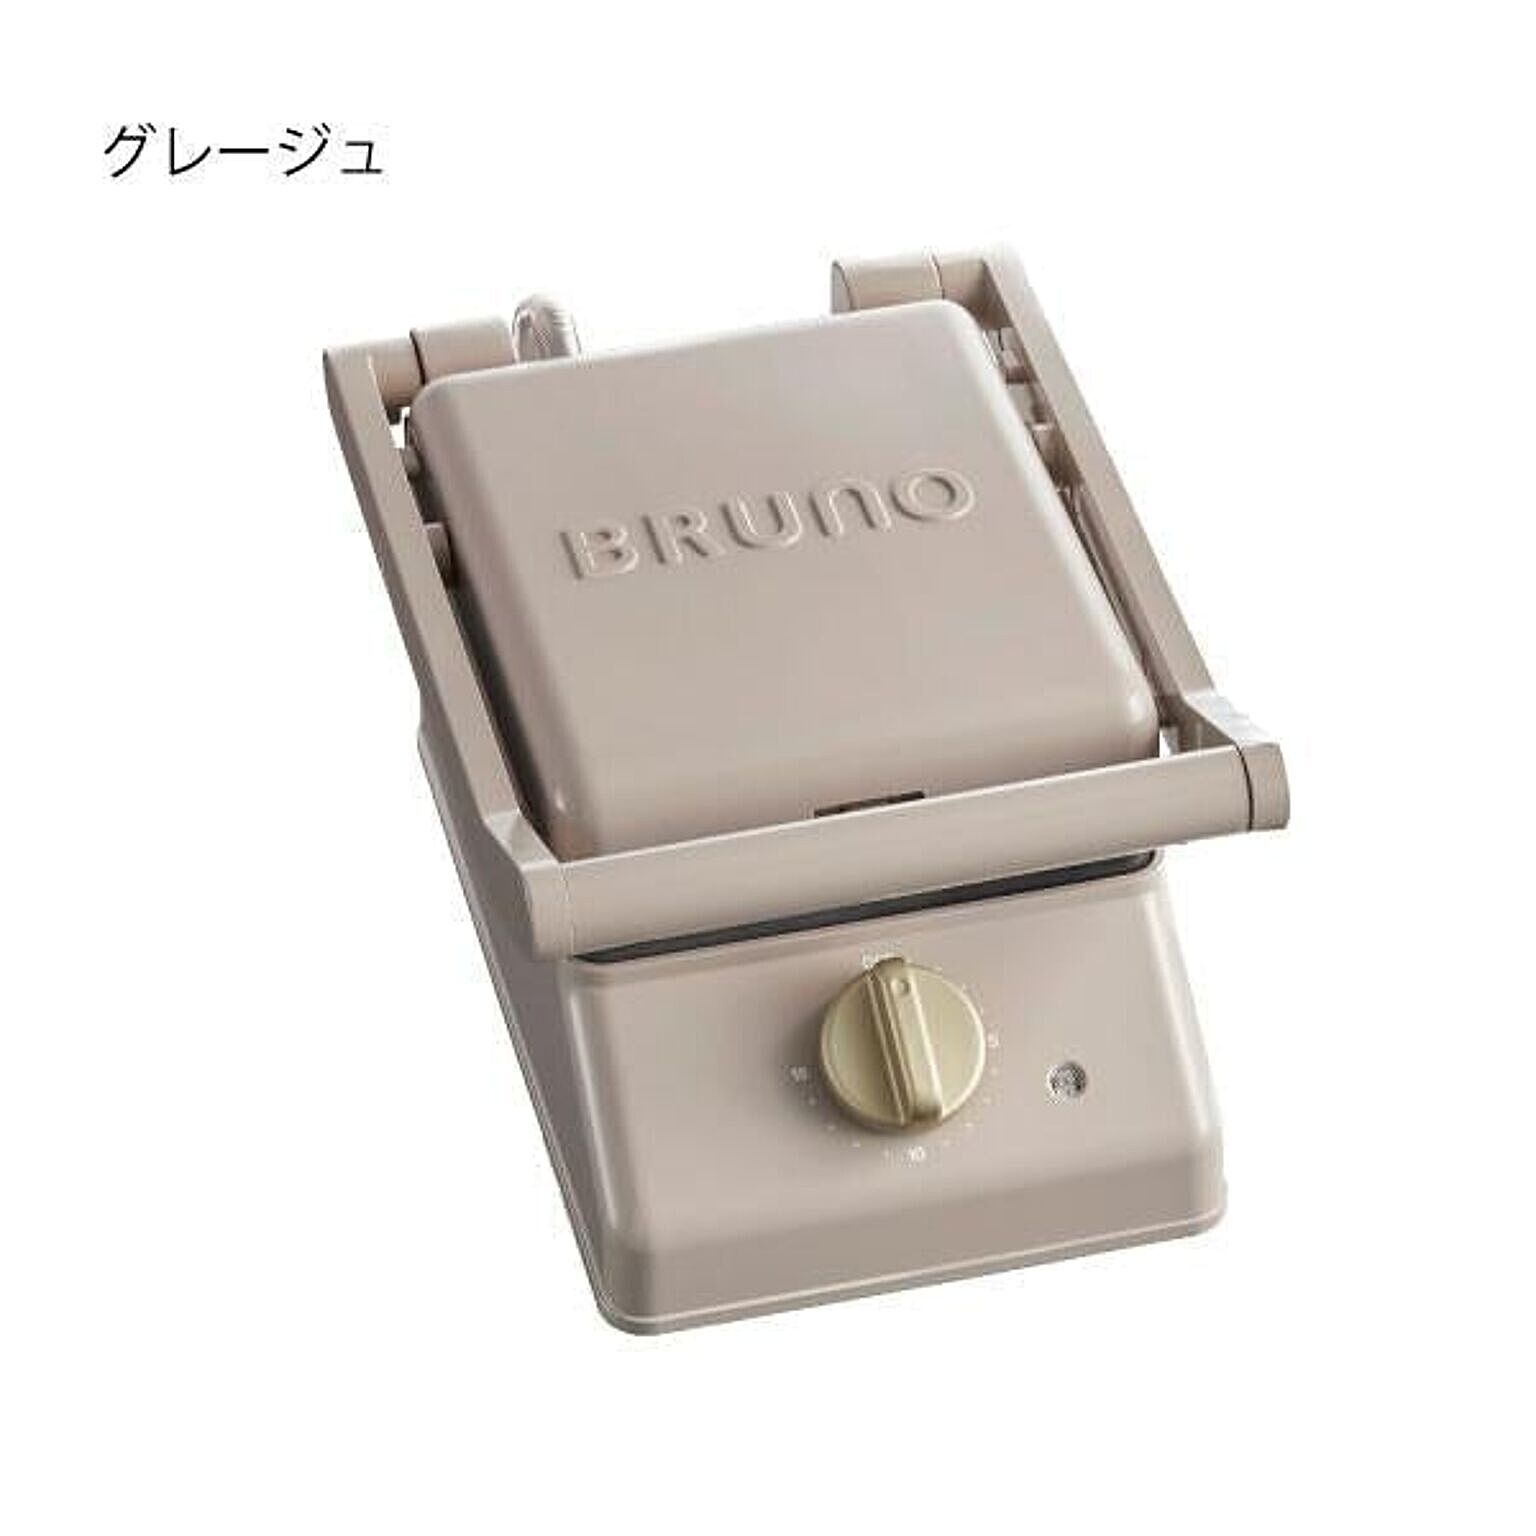 BRUNO / グリルサンドメーカー シングル